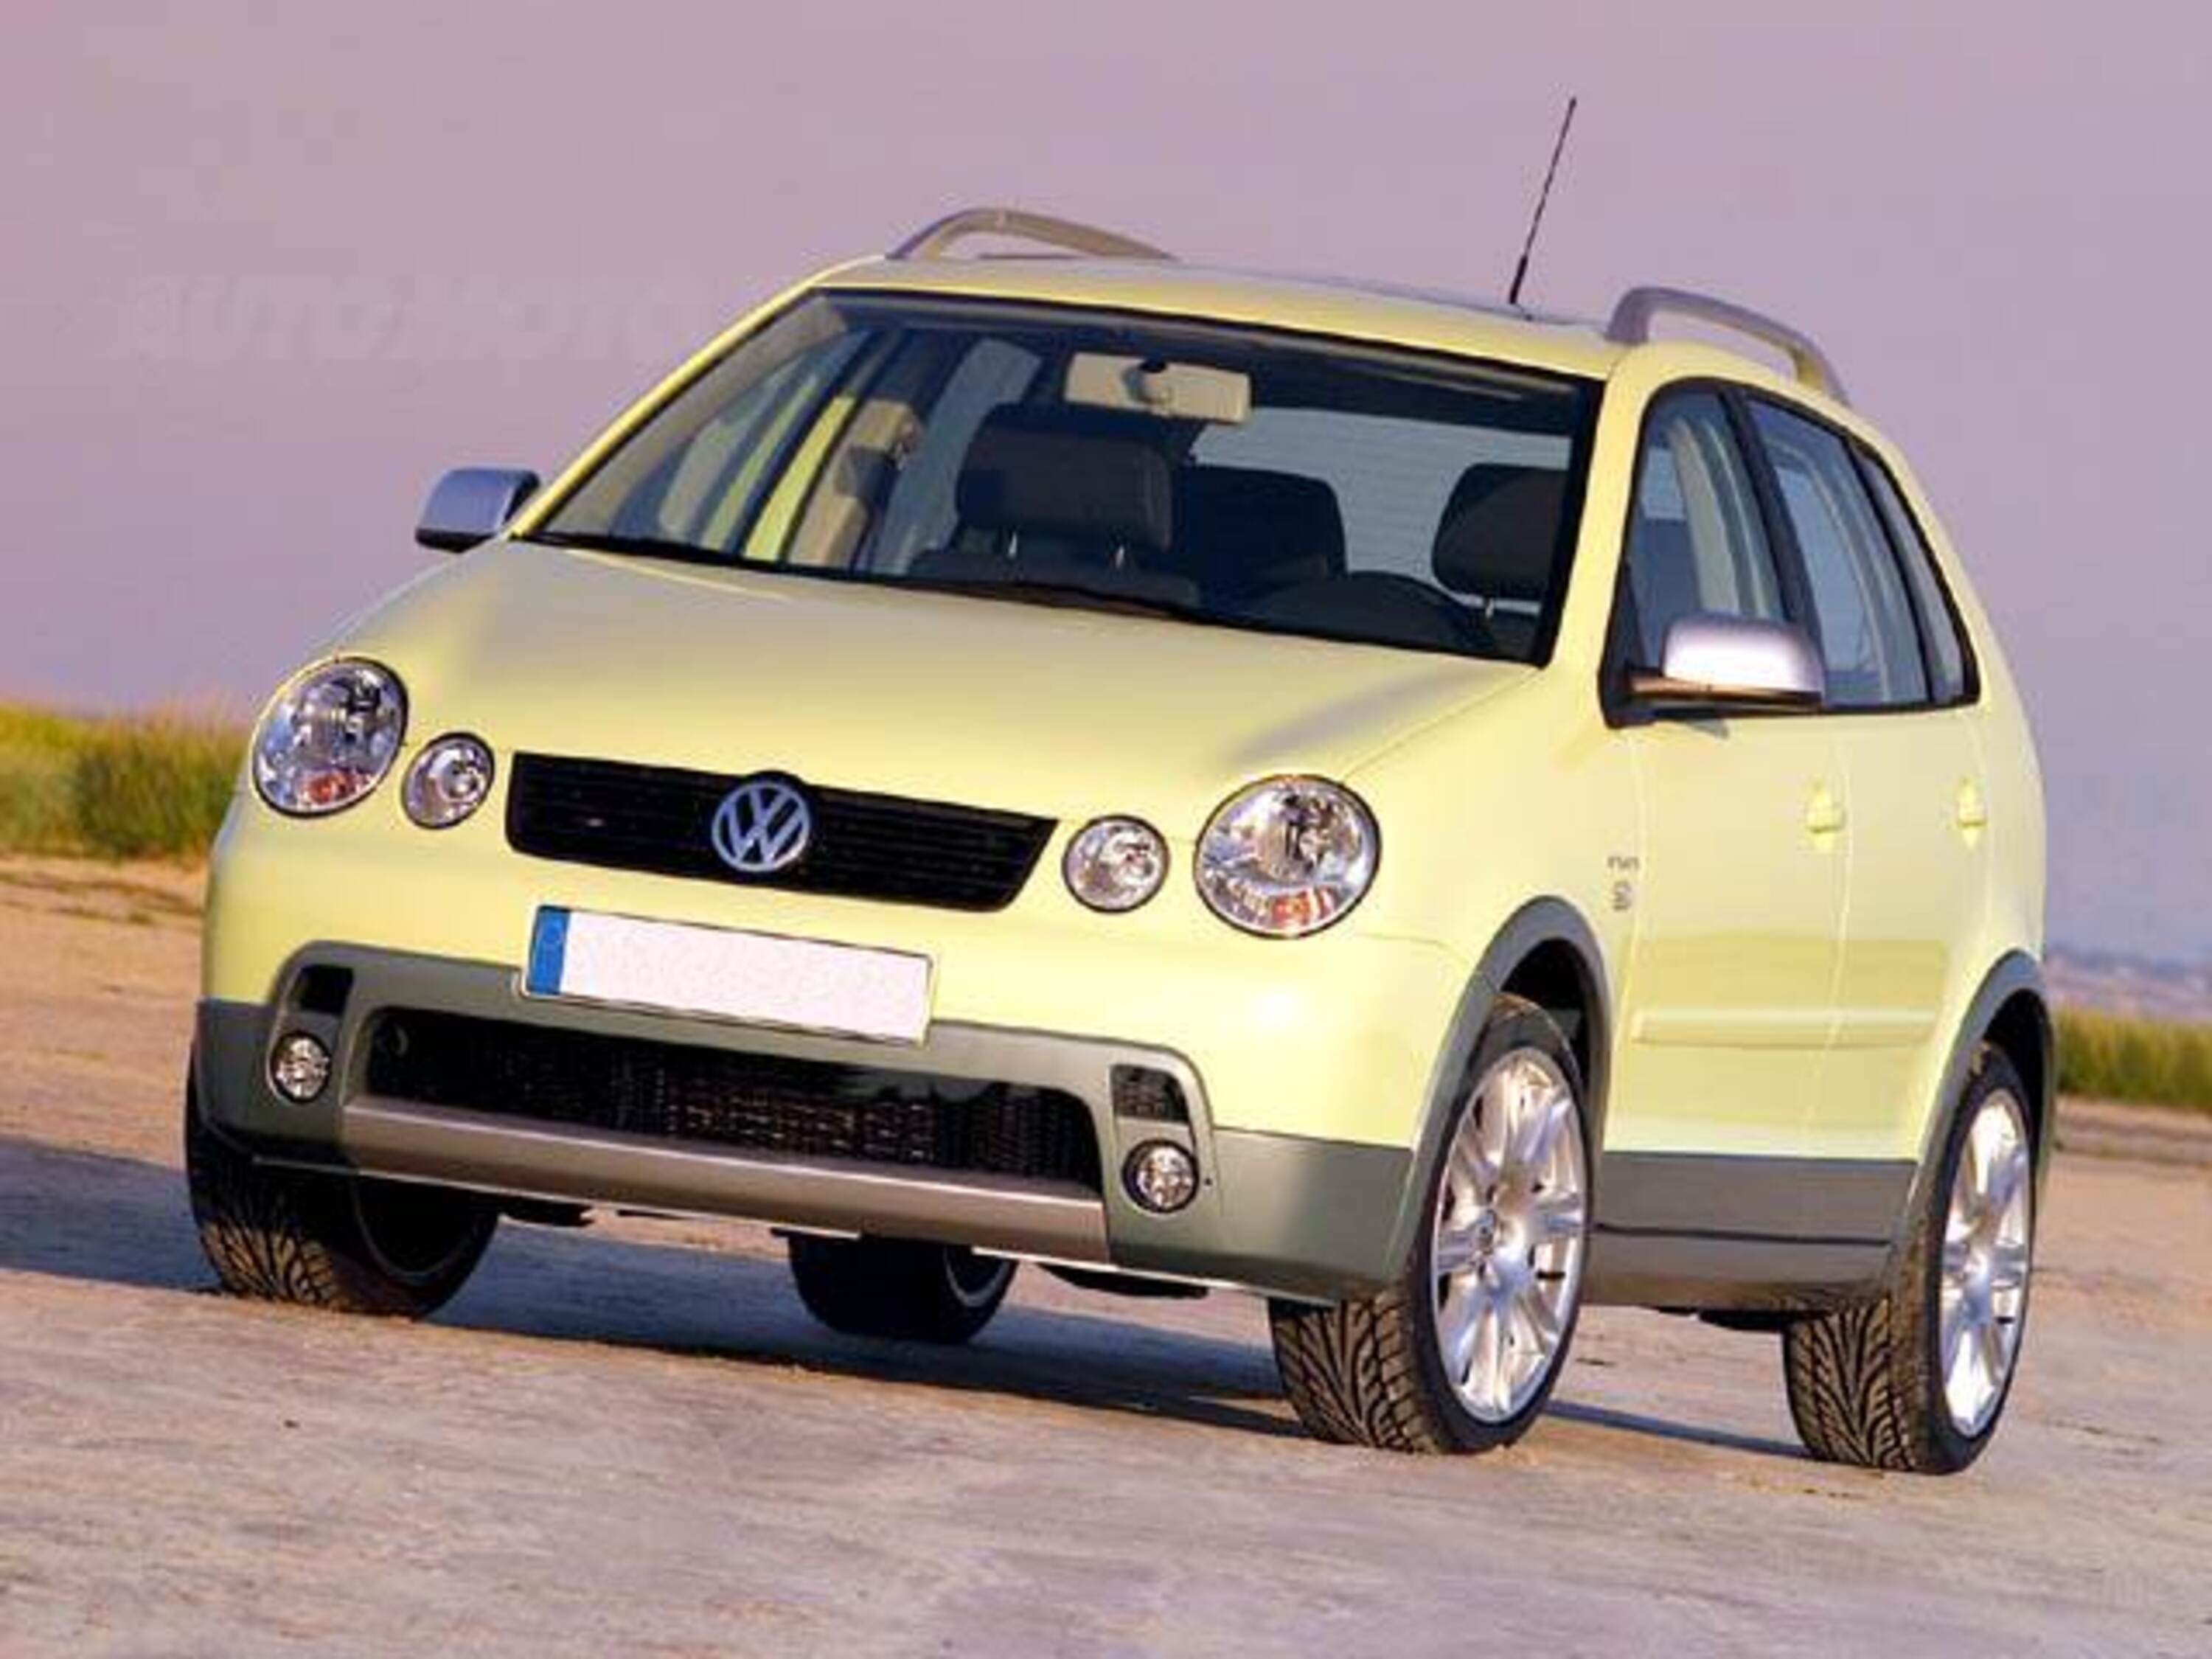 Volkswagen Polo Fun 1.4 16V